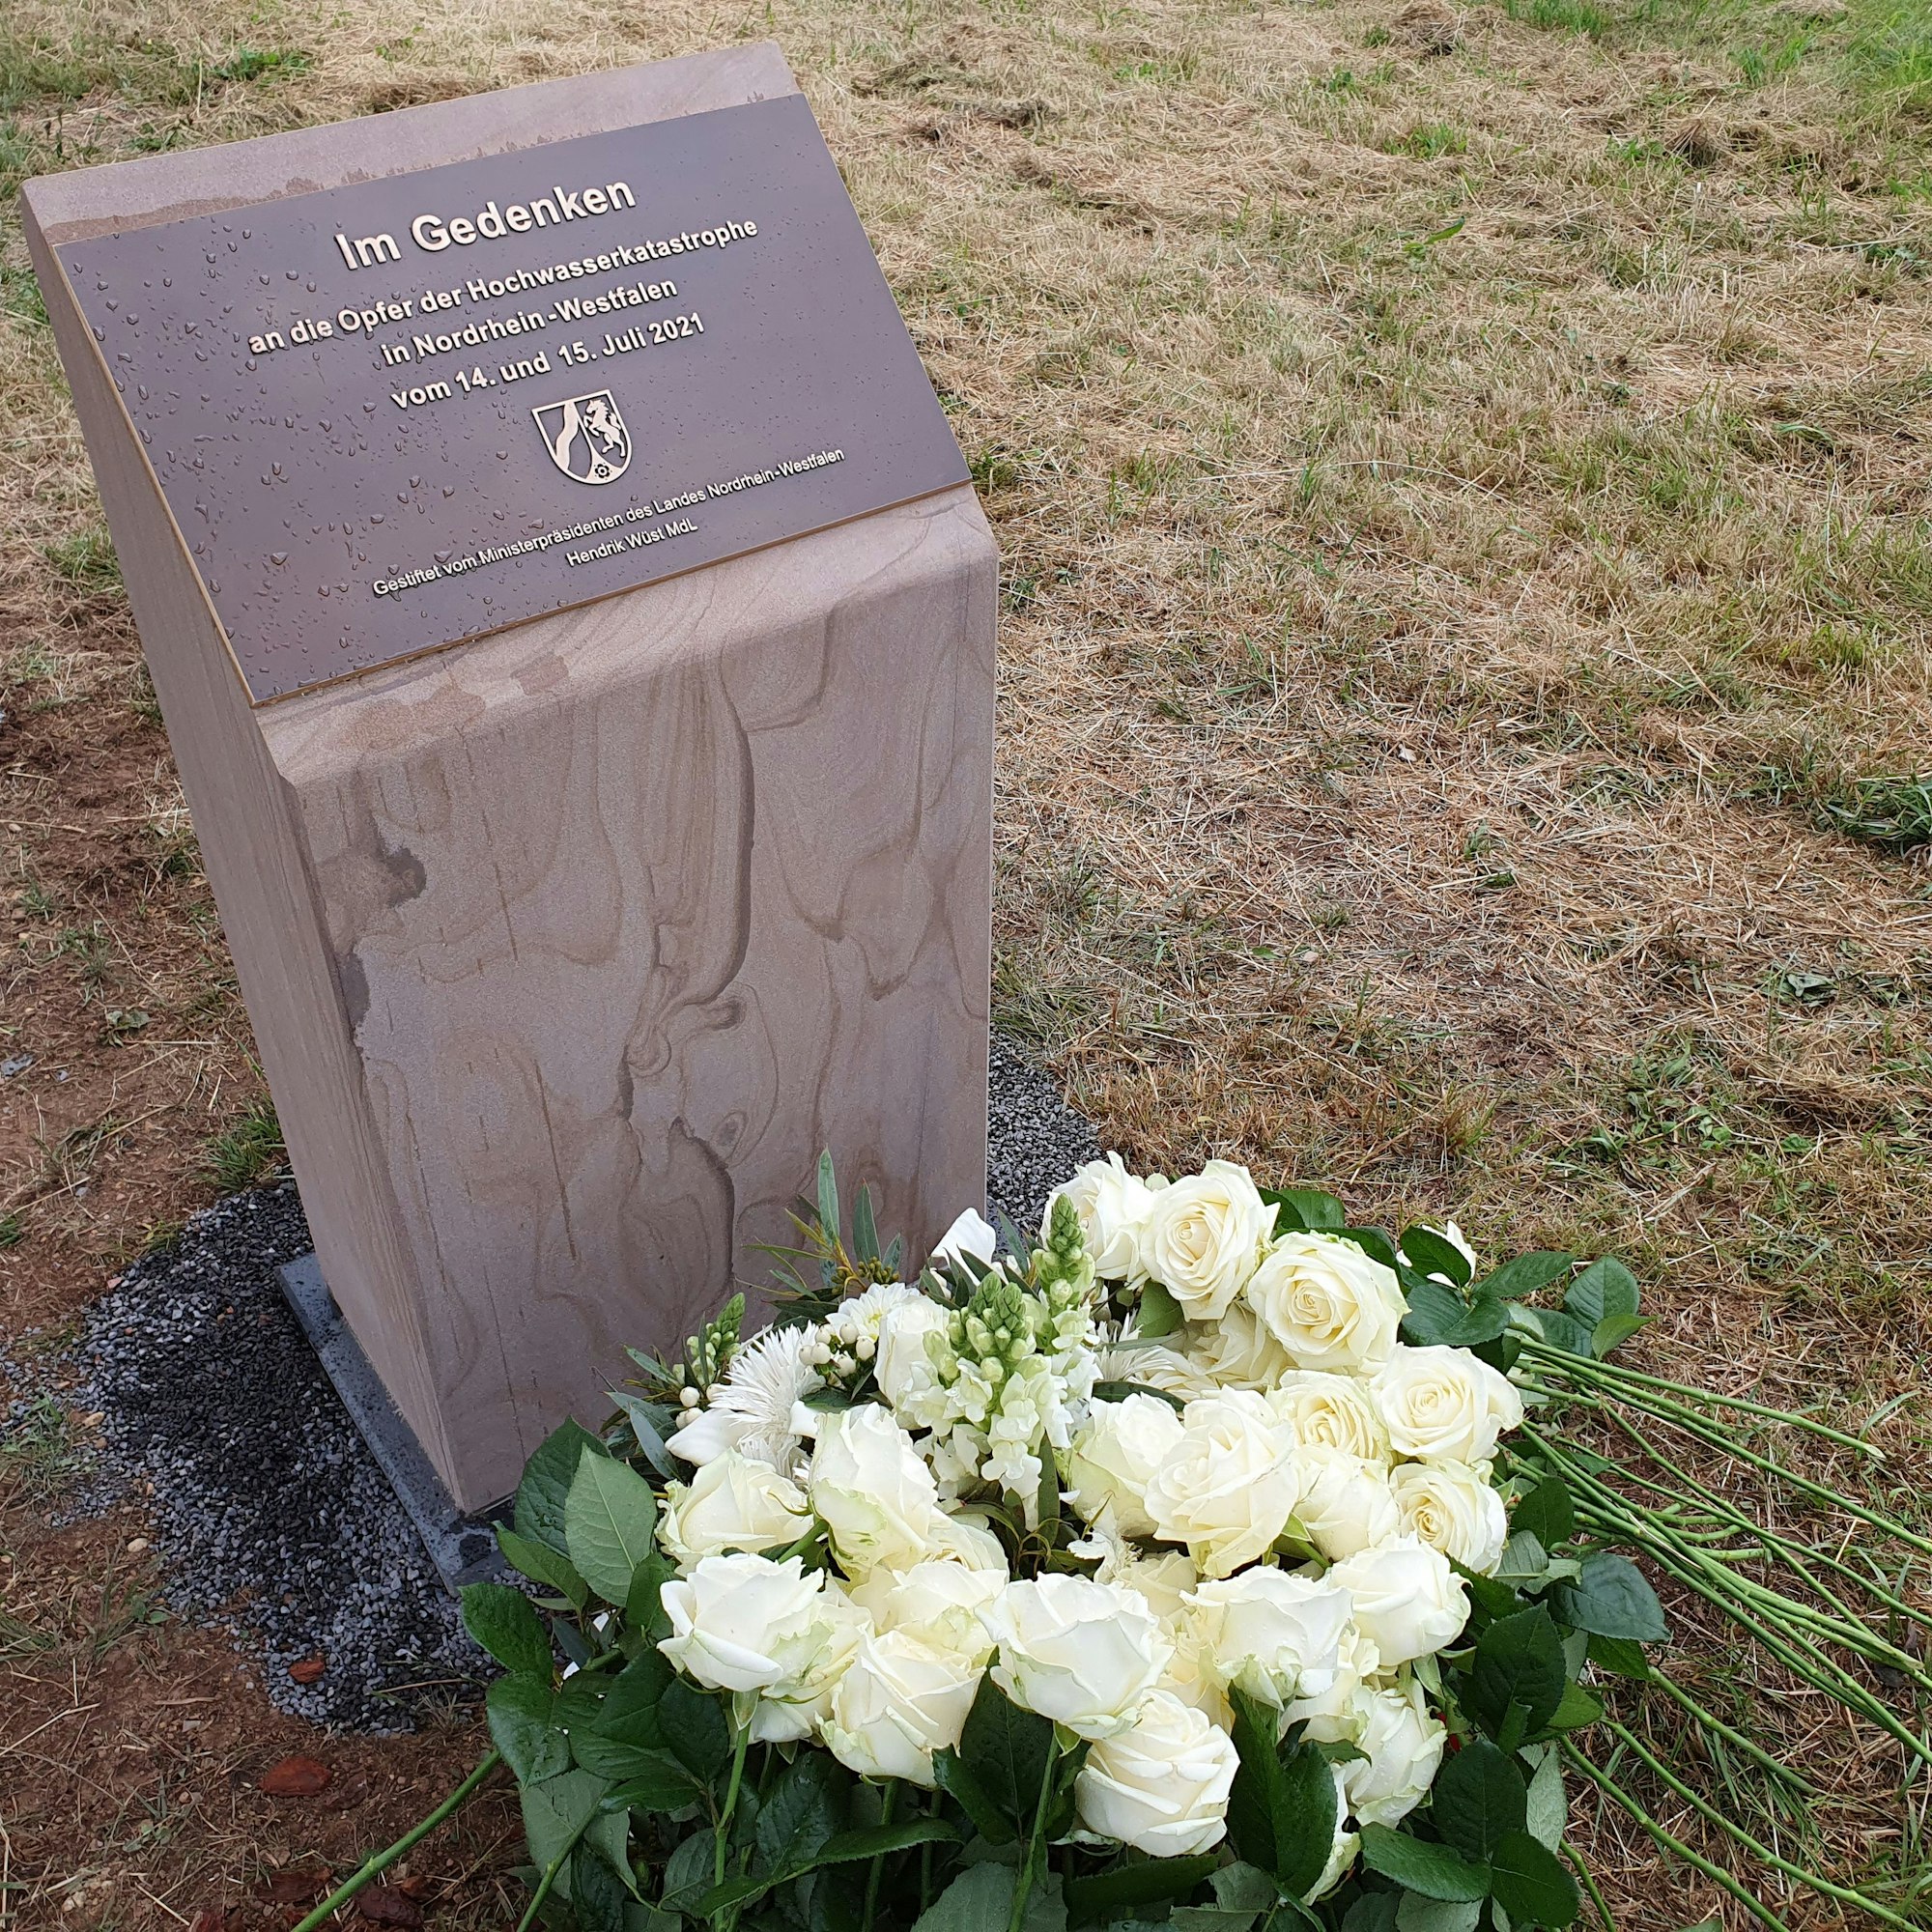 Auf einem Denkmal steht: „In Gedenken an die Opfer der Hochwasserkatastrophe in Nordrhein Westfalen vom 14. und 15. Juli 2021“. Darunter liegen weiße Rosen.